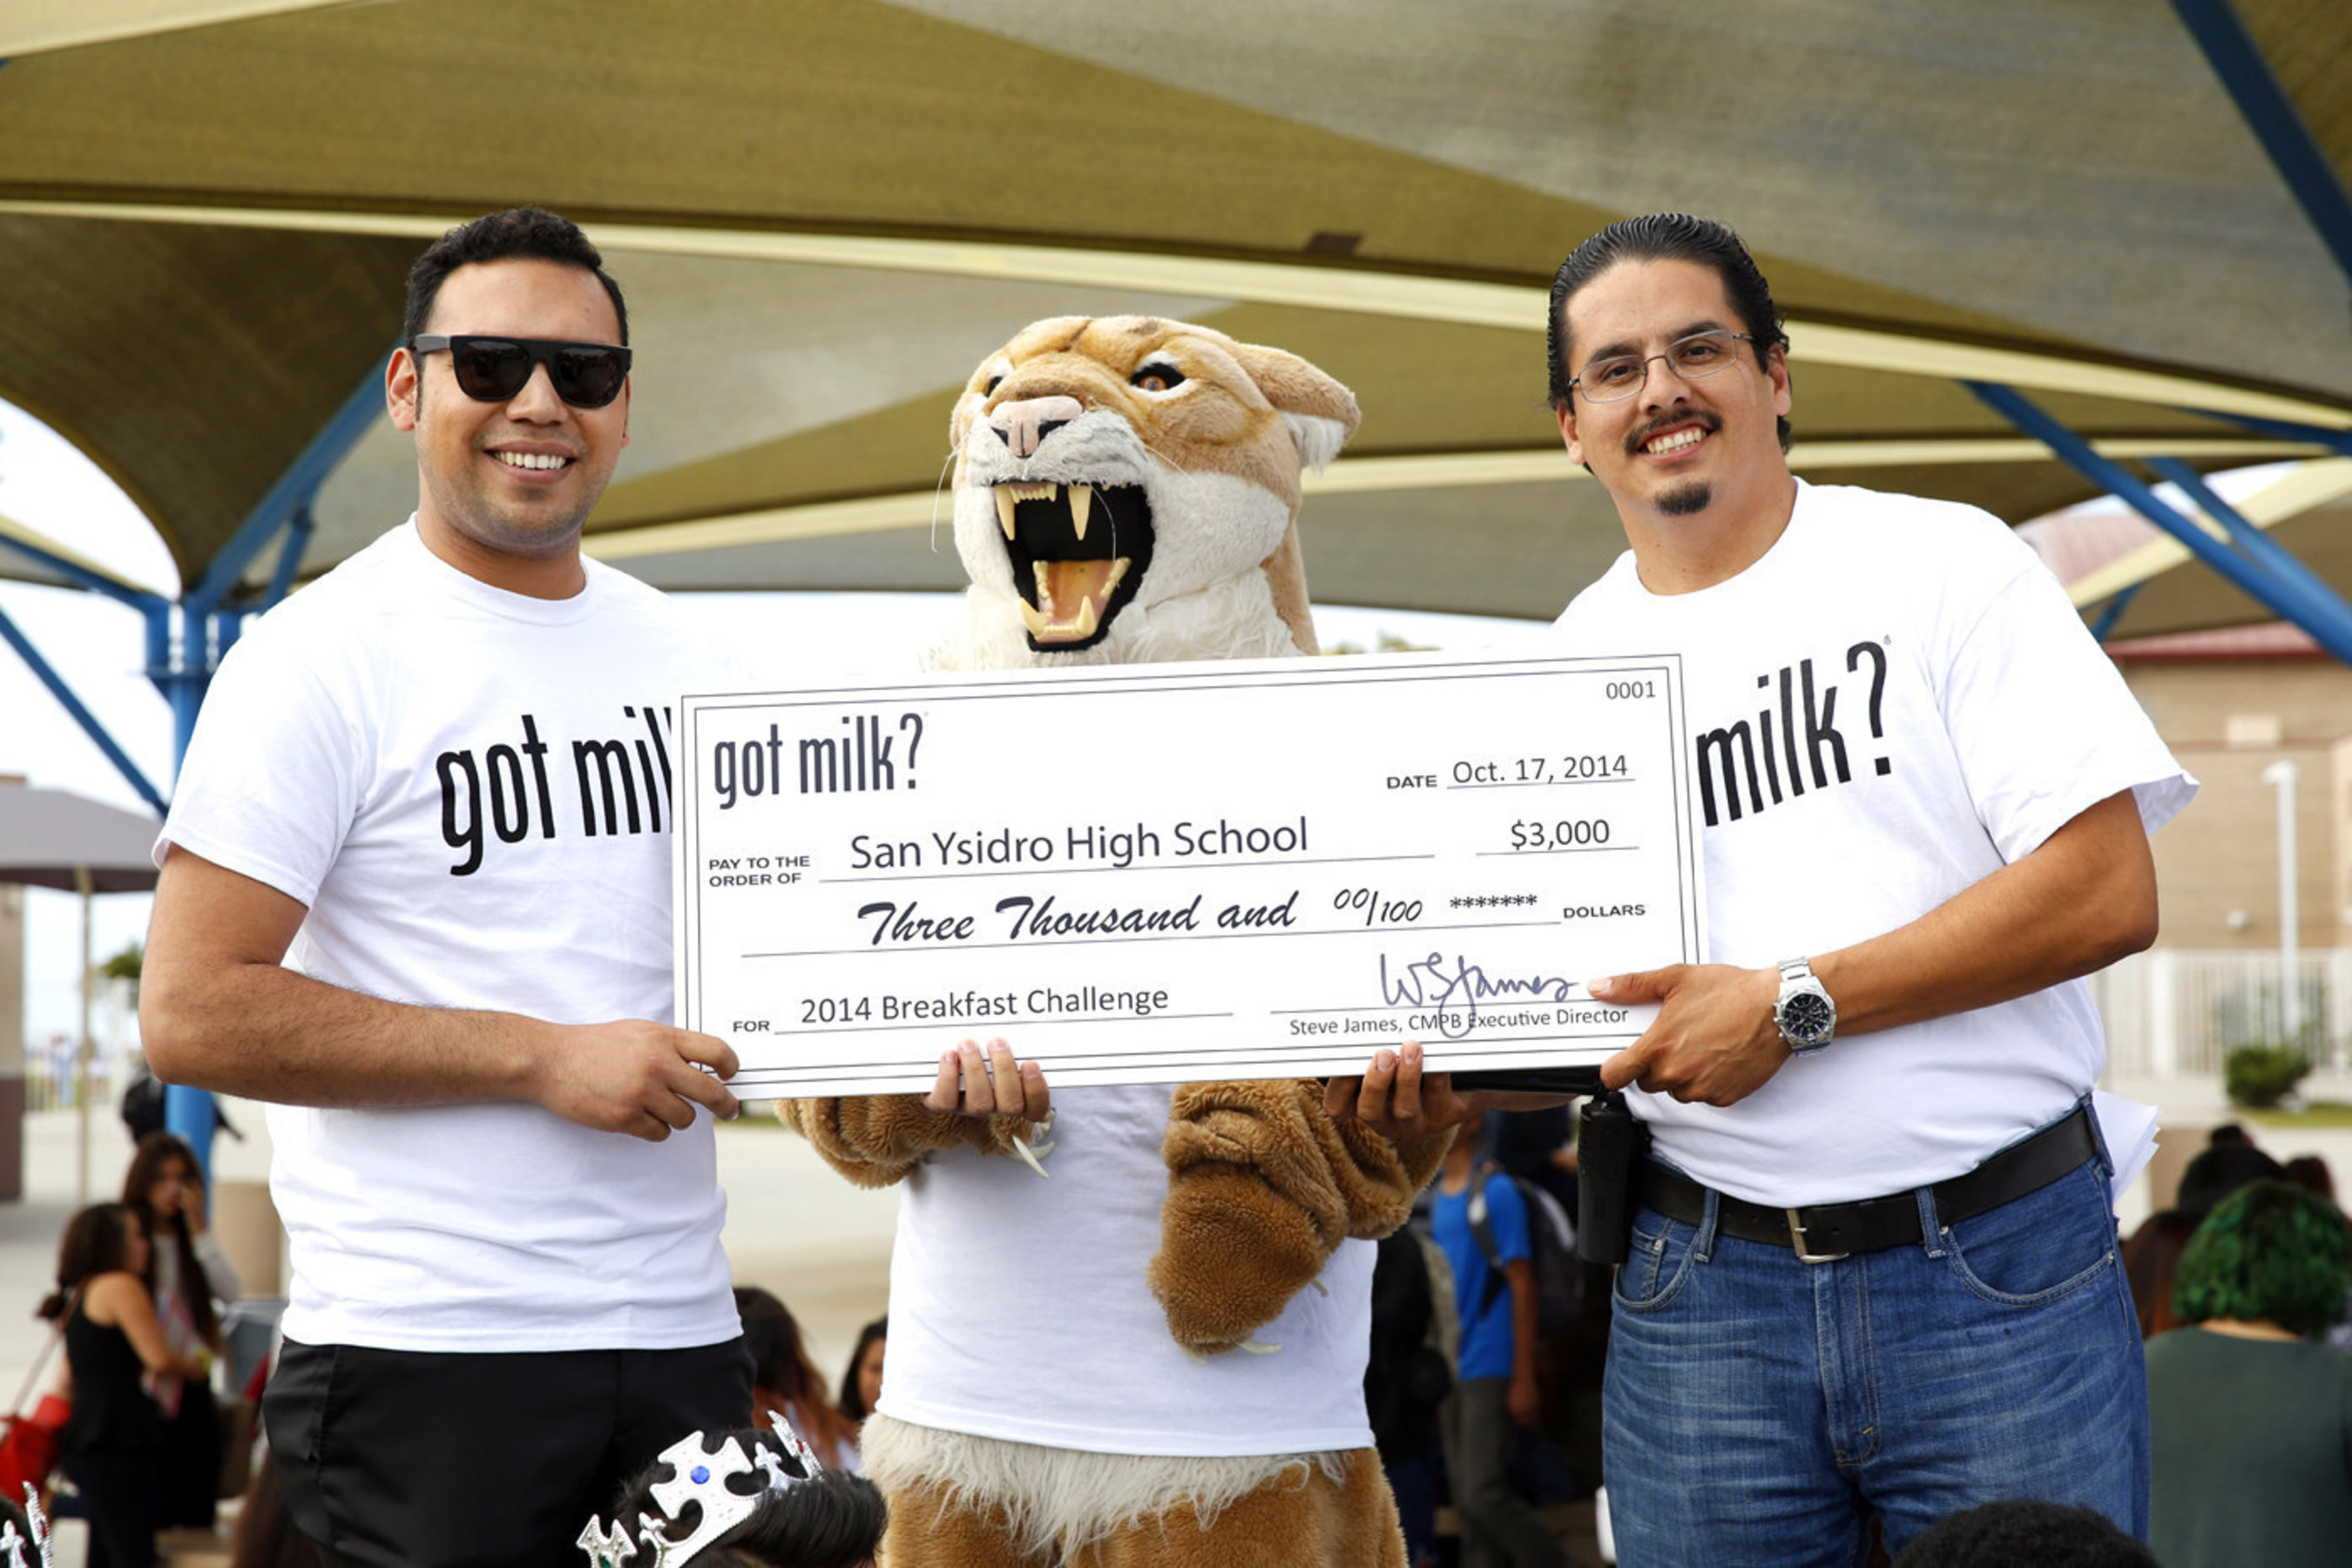 CALIFORNIA SCHOOLS WIN "GOT MILK?" BREAKFAST CHALLENGE: Students Receive More than $40,000 for Student Activities